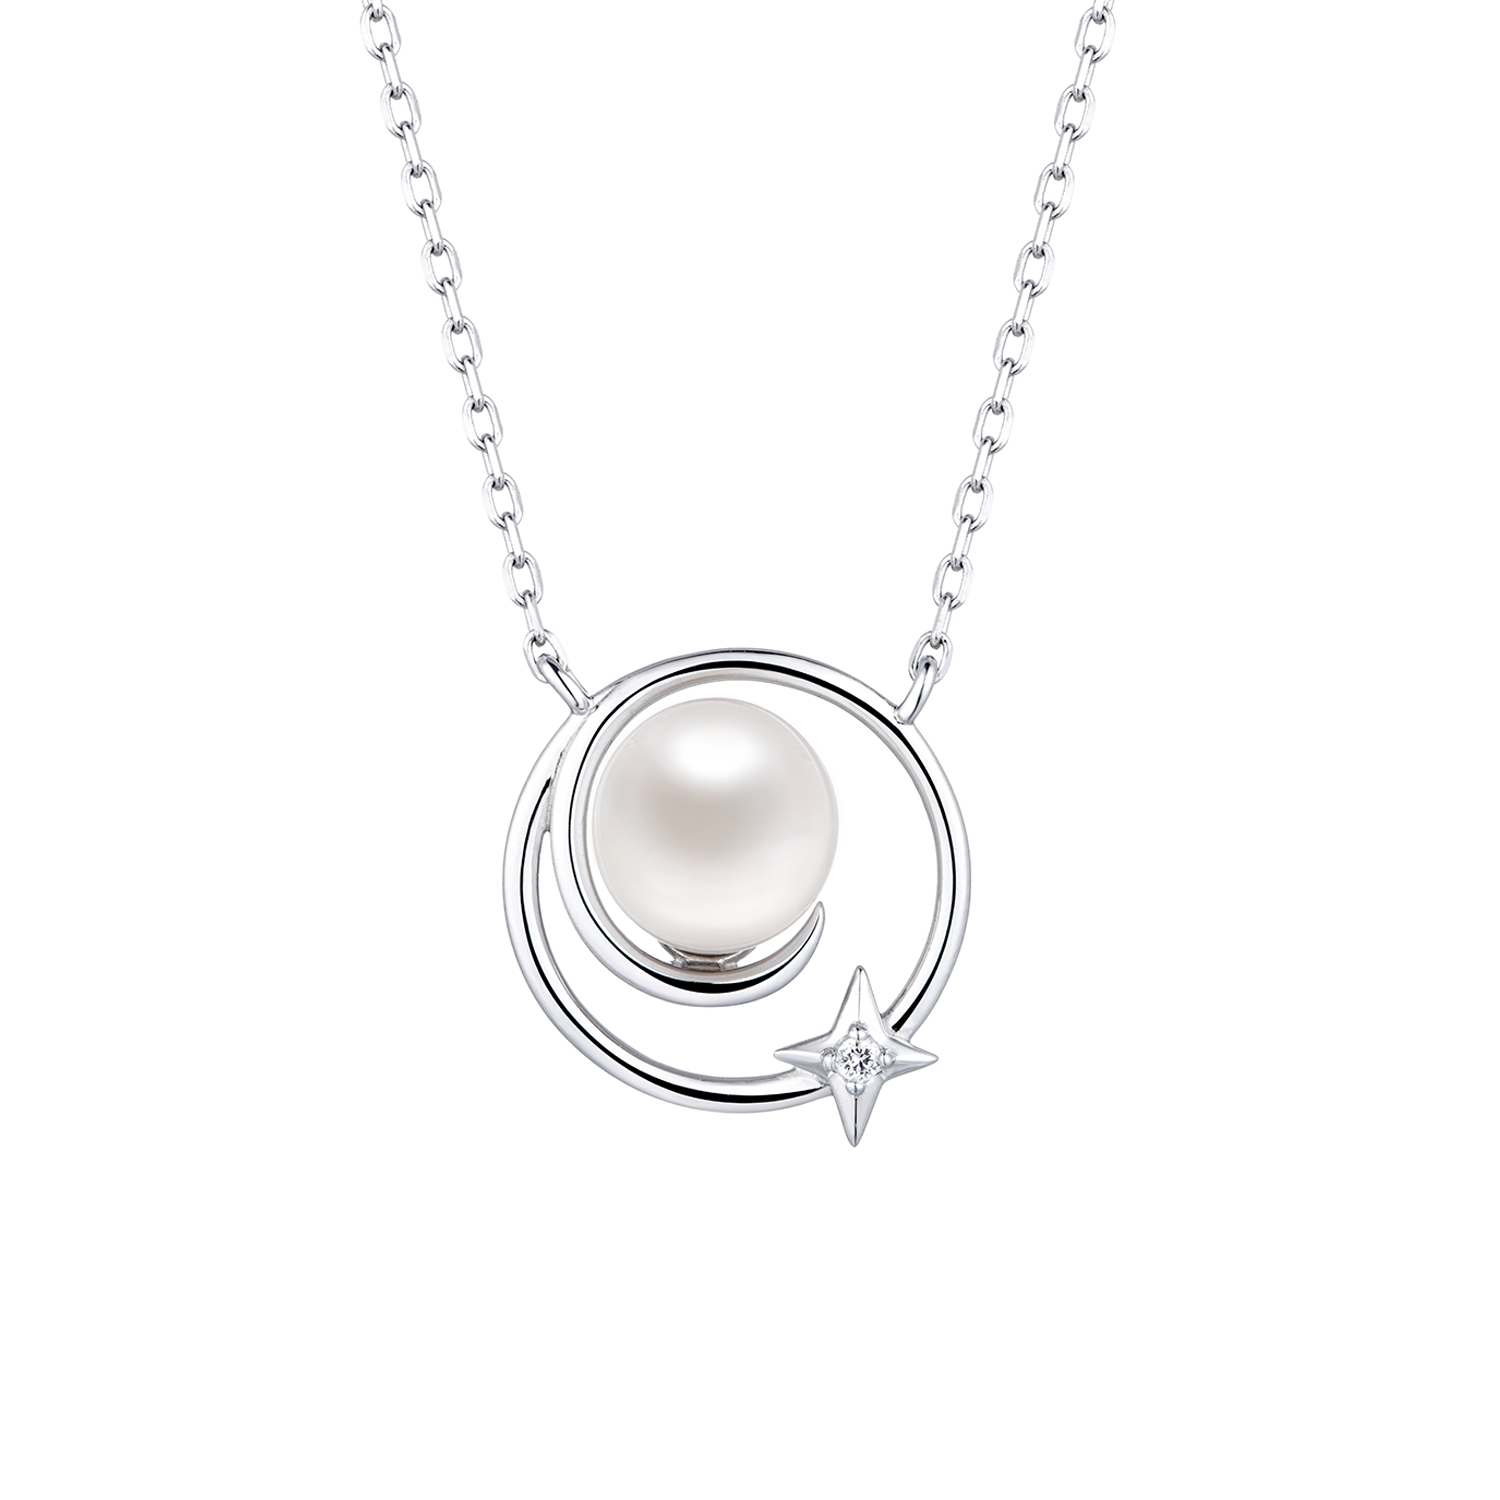 Silvererse 银饰间系列"星空轨迹"S925银镀18K金珍珠项链